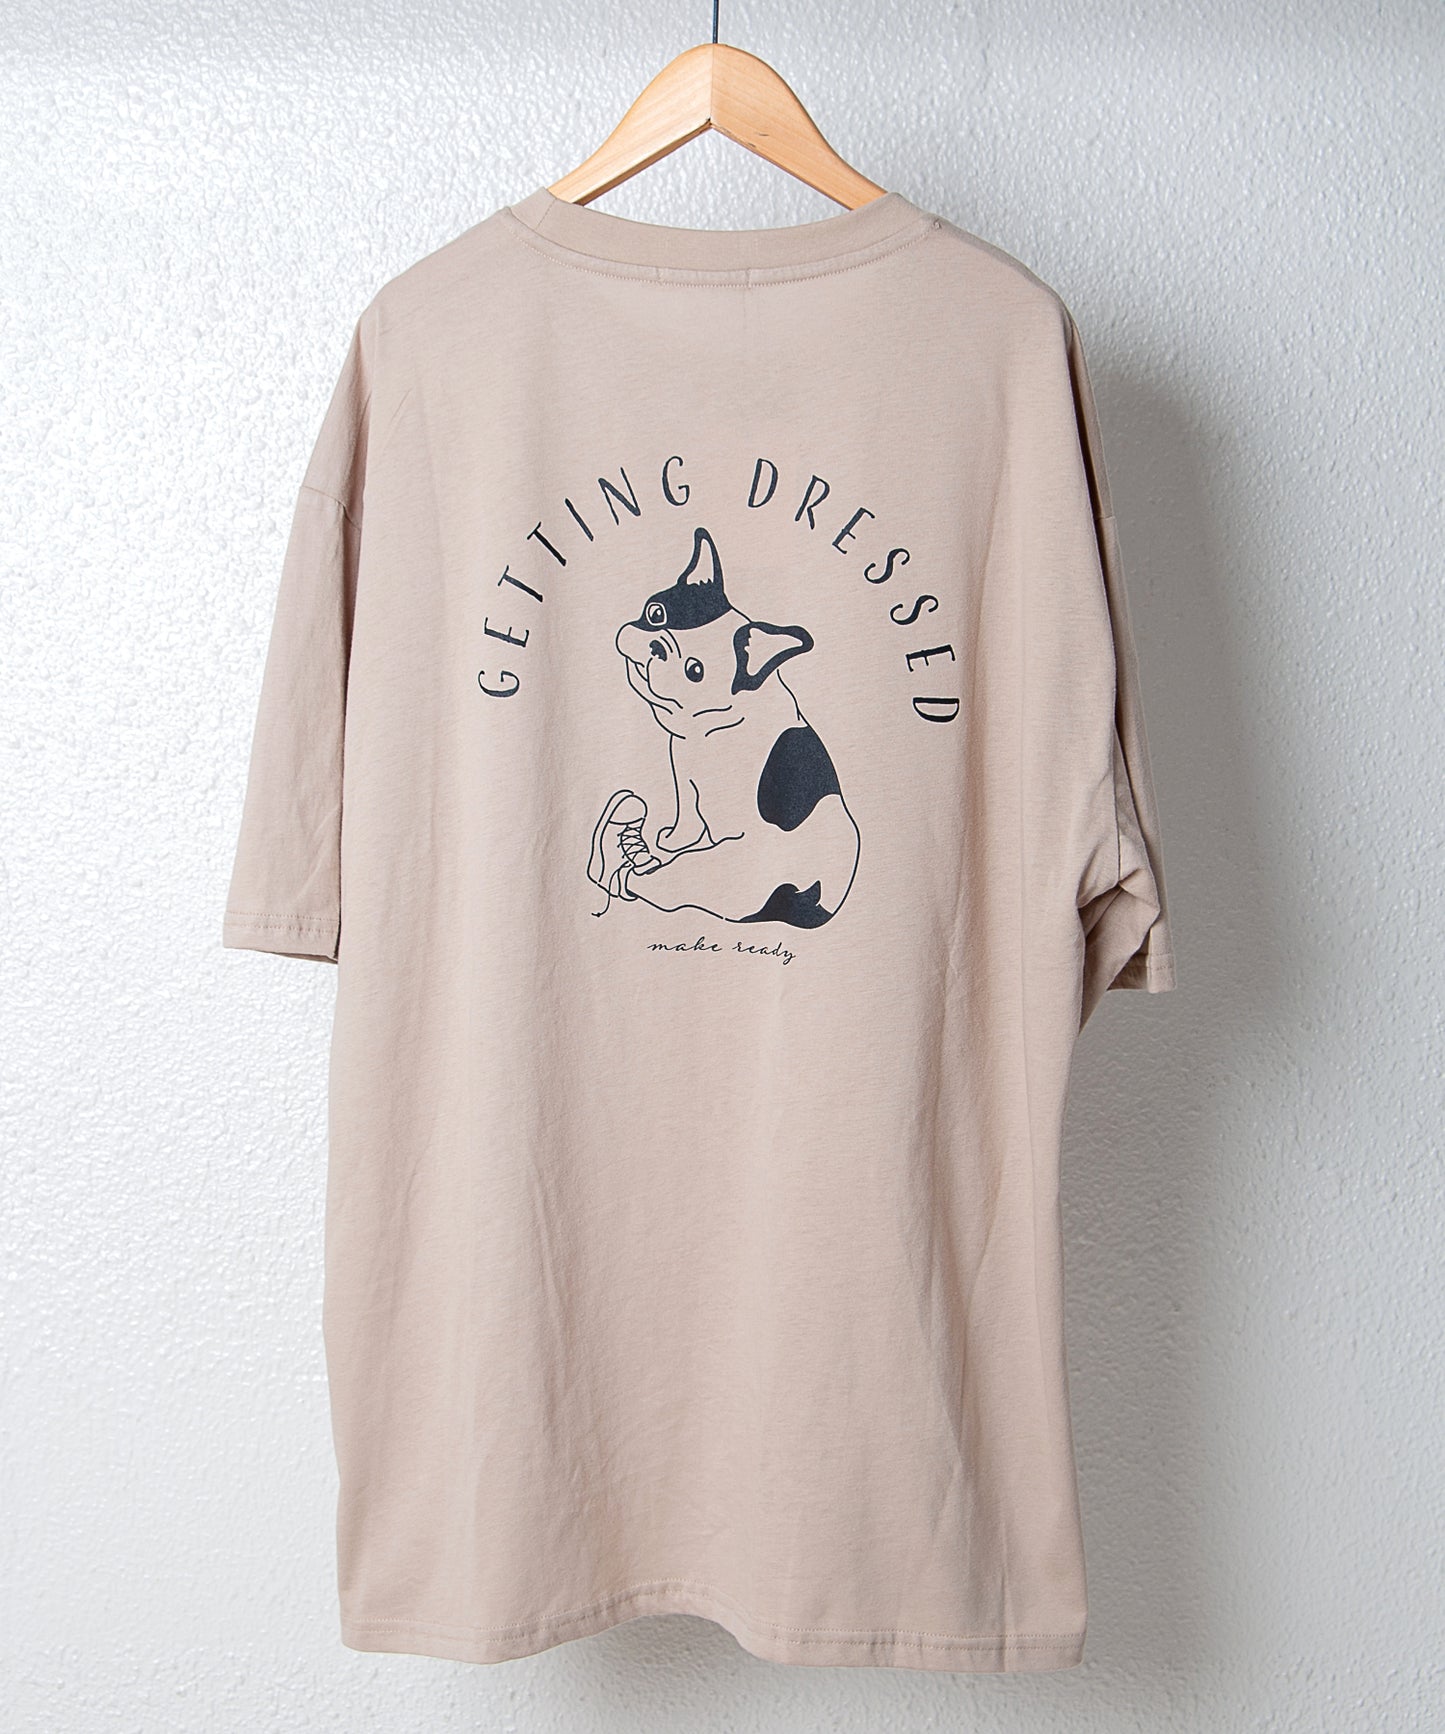 【ペアルック】バックドッグイラストデザイン半袖Tシャツ